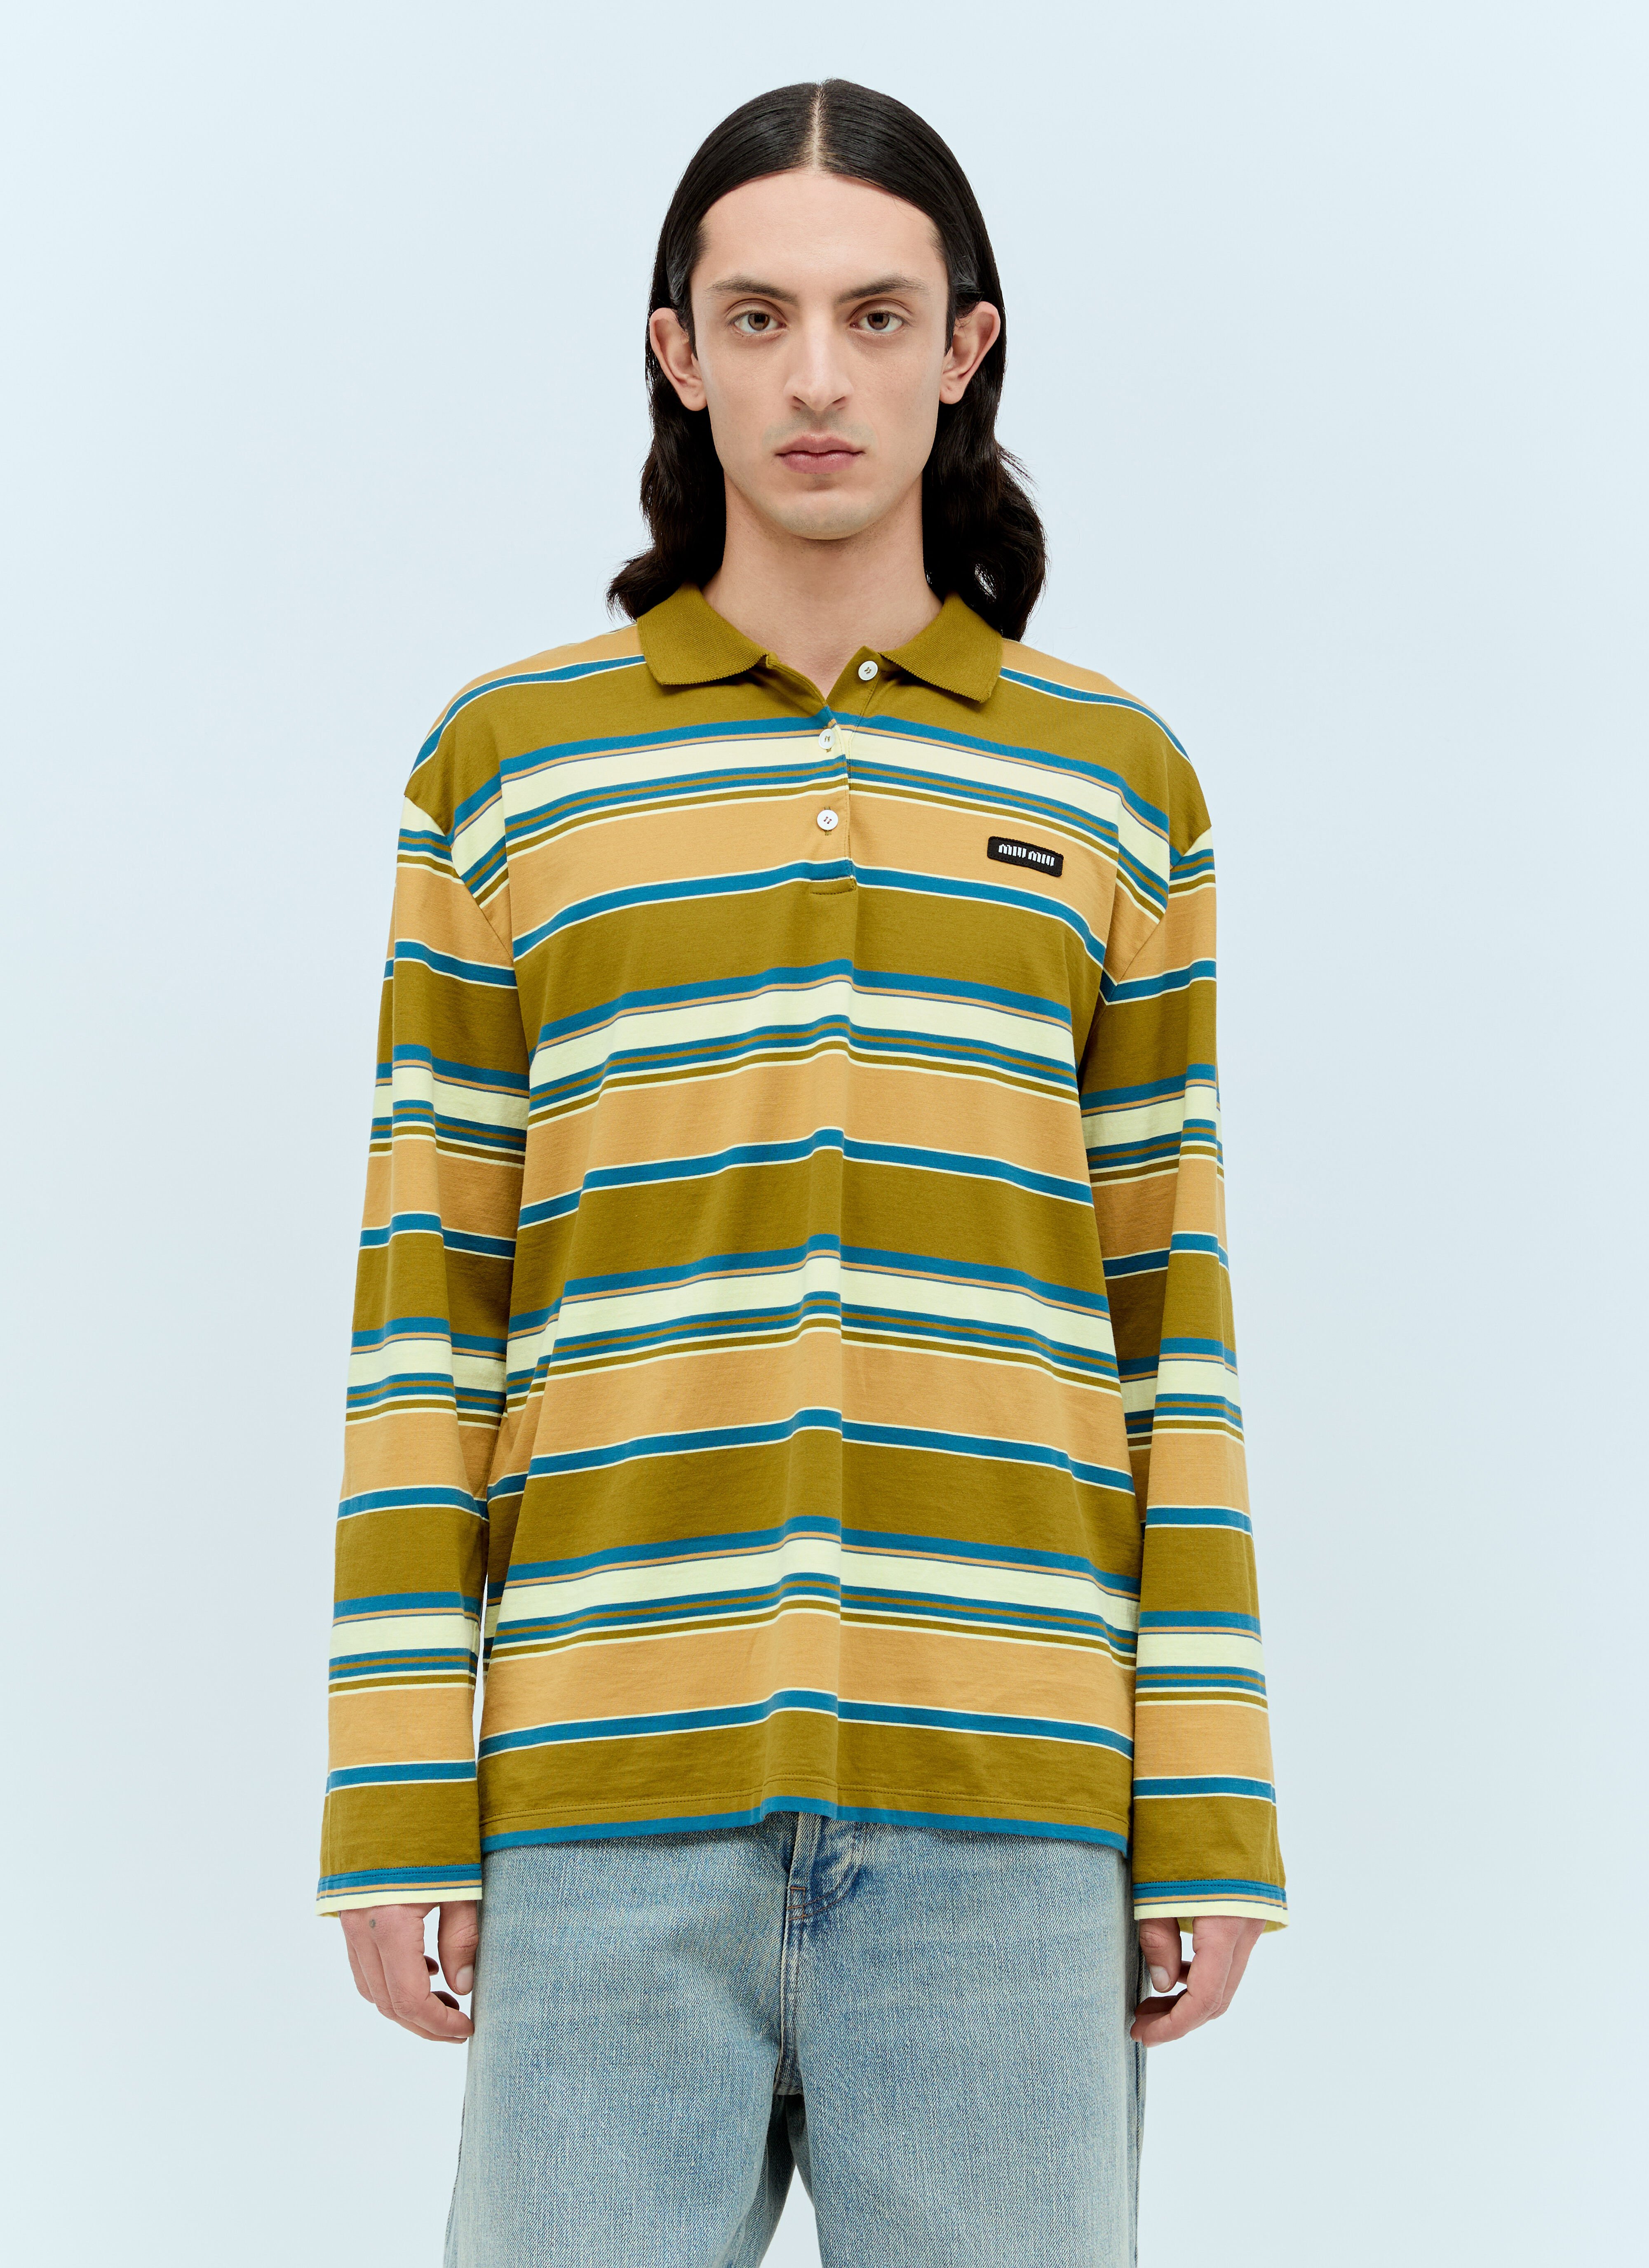 Miu Miu Striped Polo T-Shirt Beige miu0157006